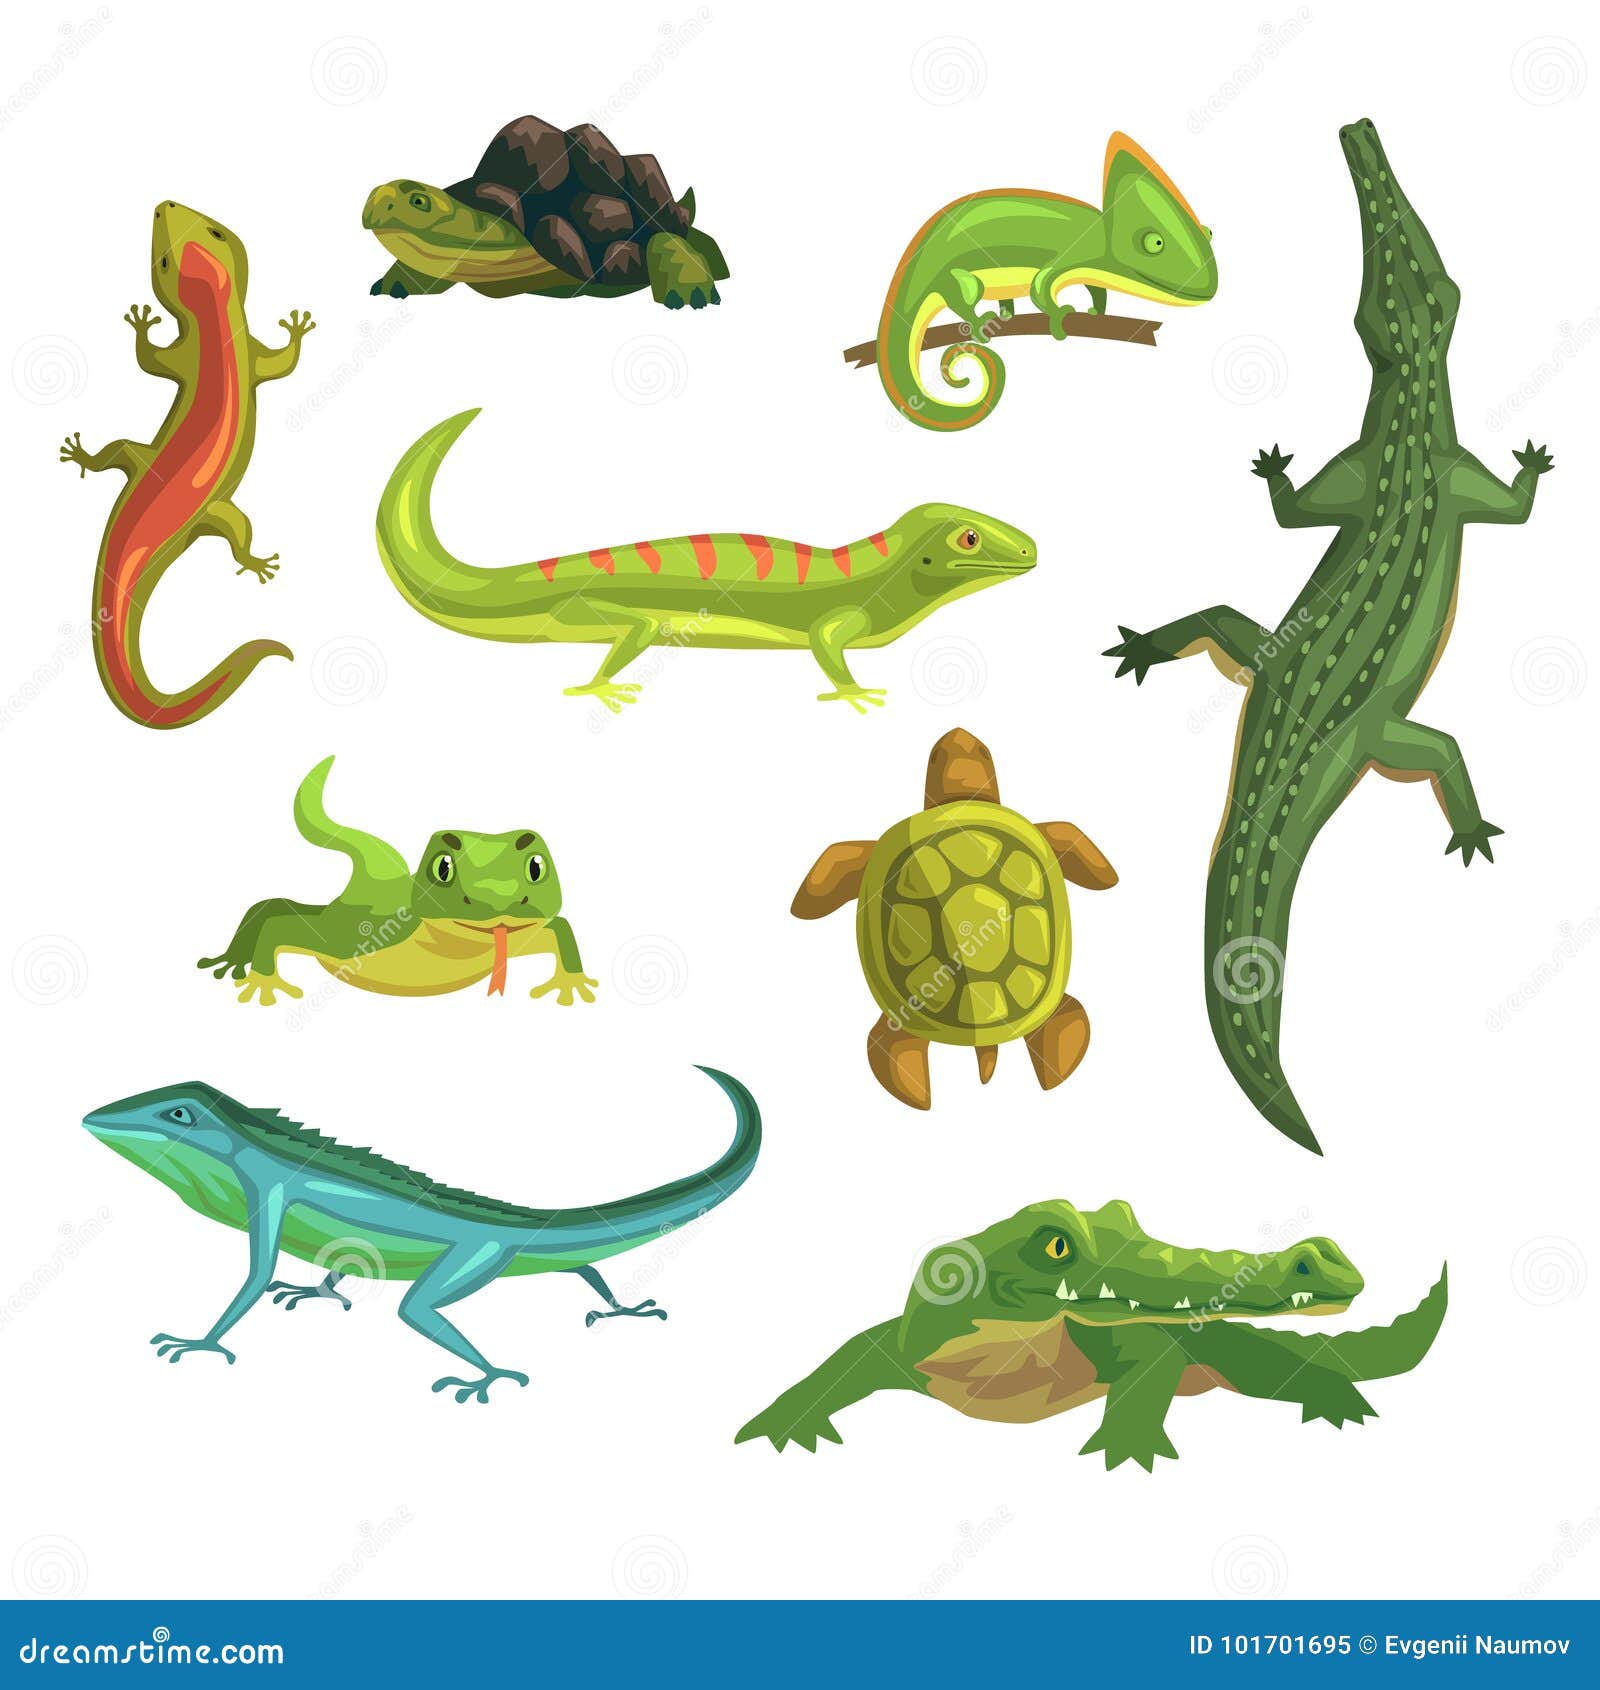 Resultado de imagen de reptiles ejemplos